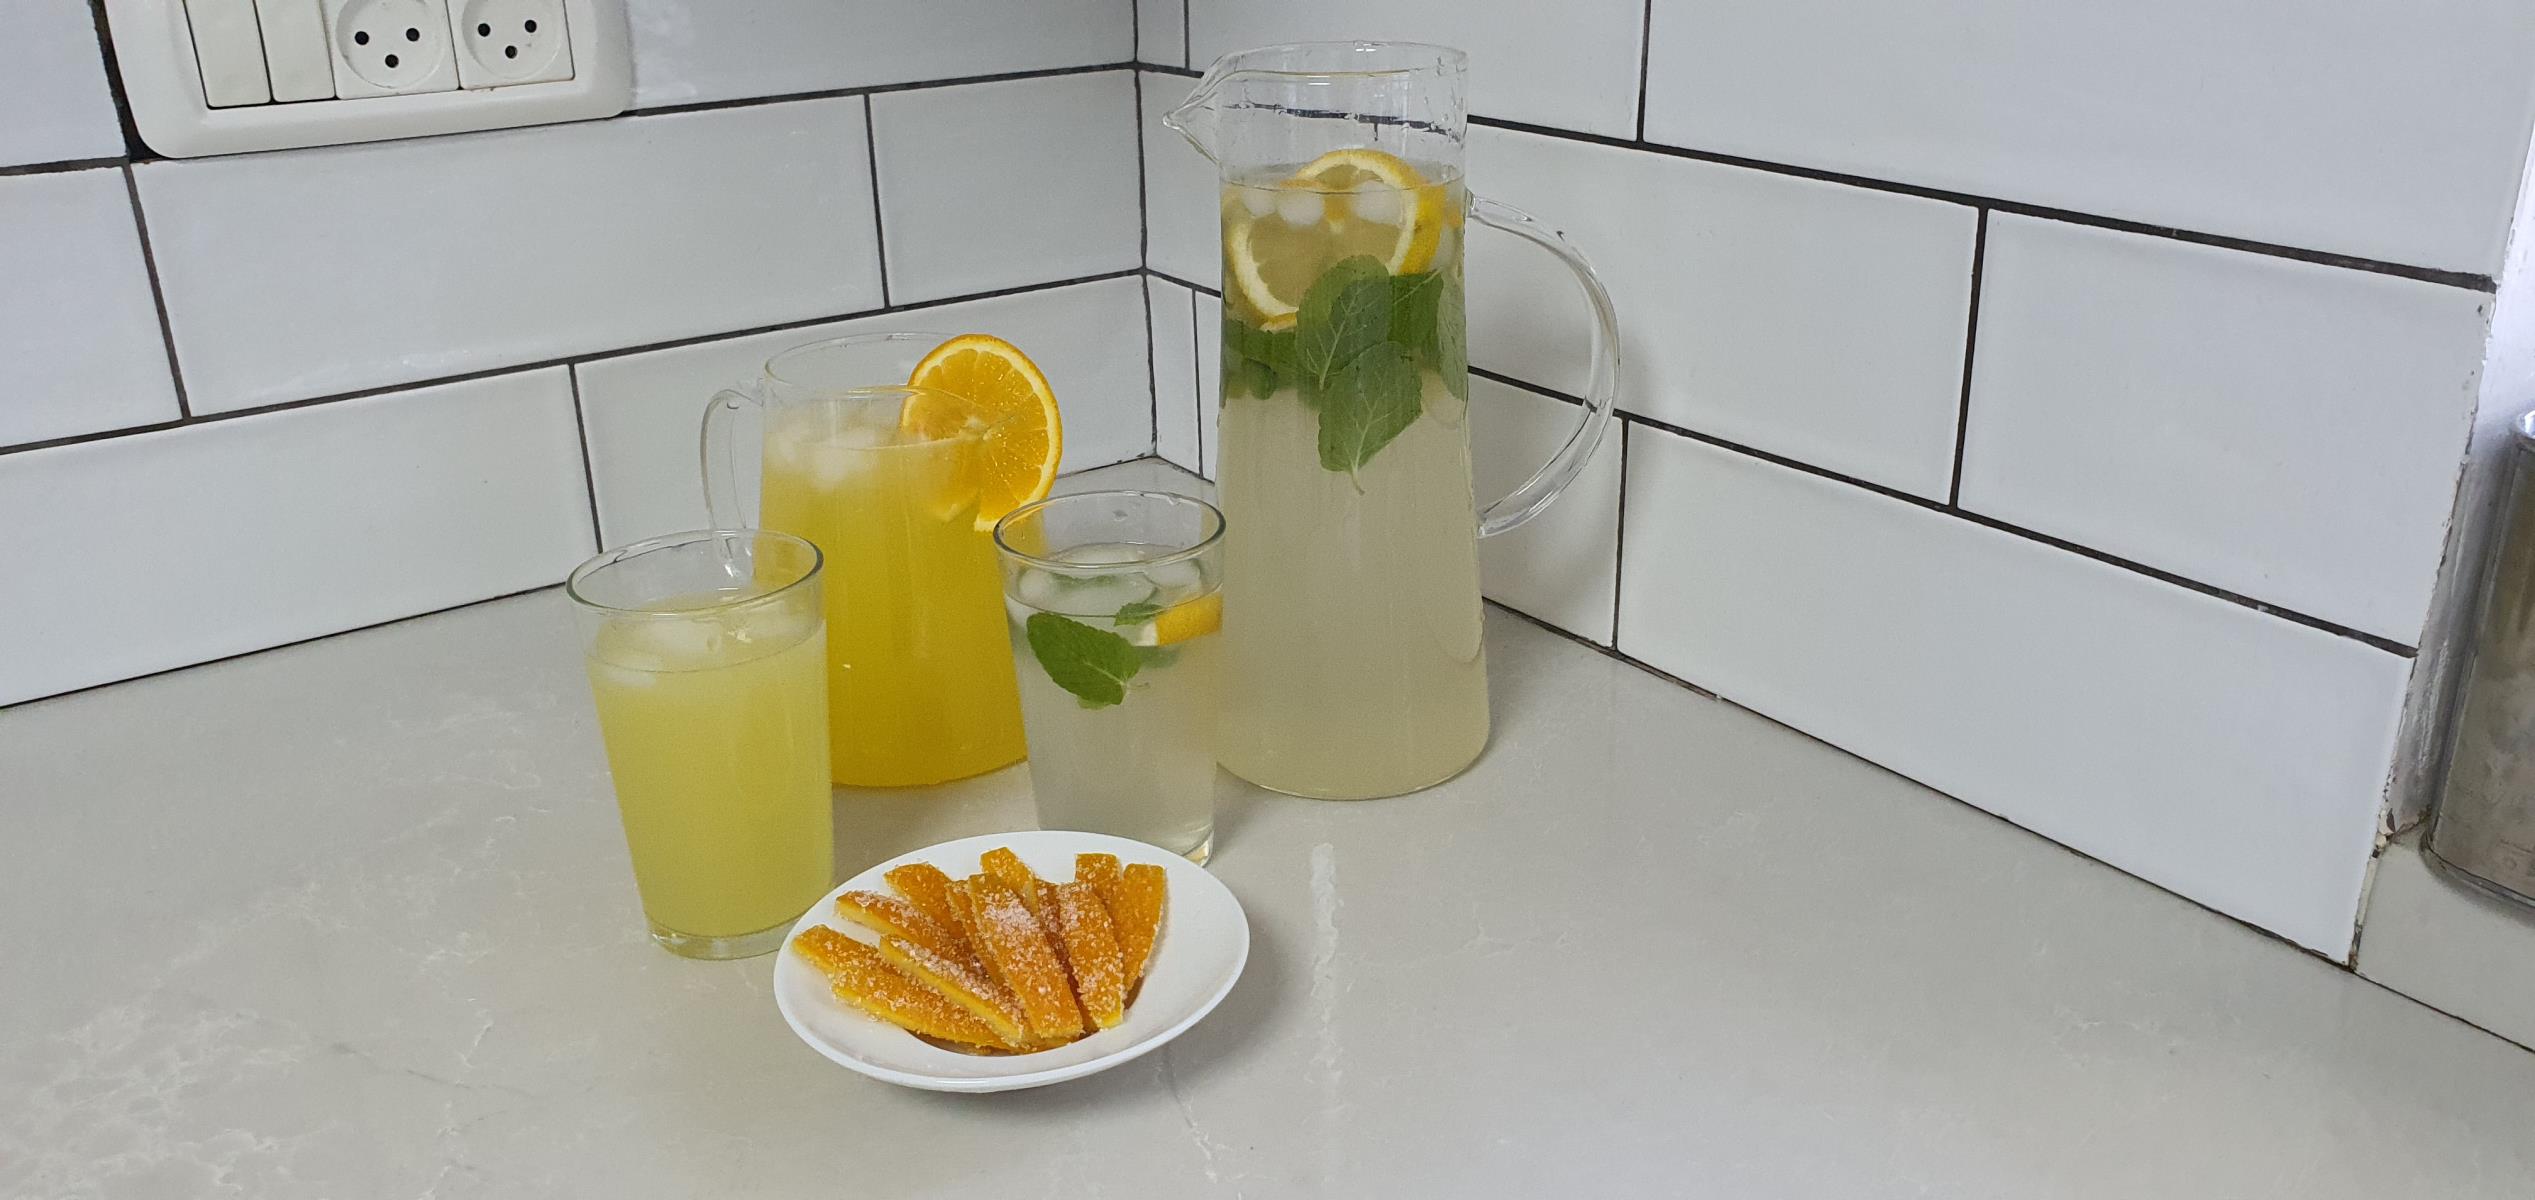 תרכיז תפוזים/ לימונים וקליפות תפוזים מסוכרים 